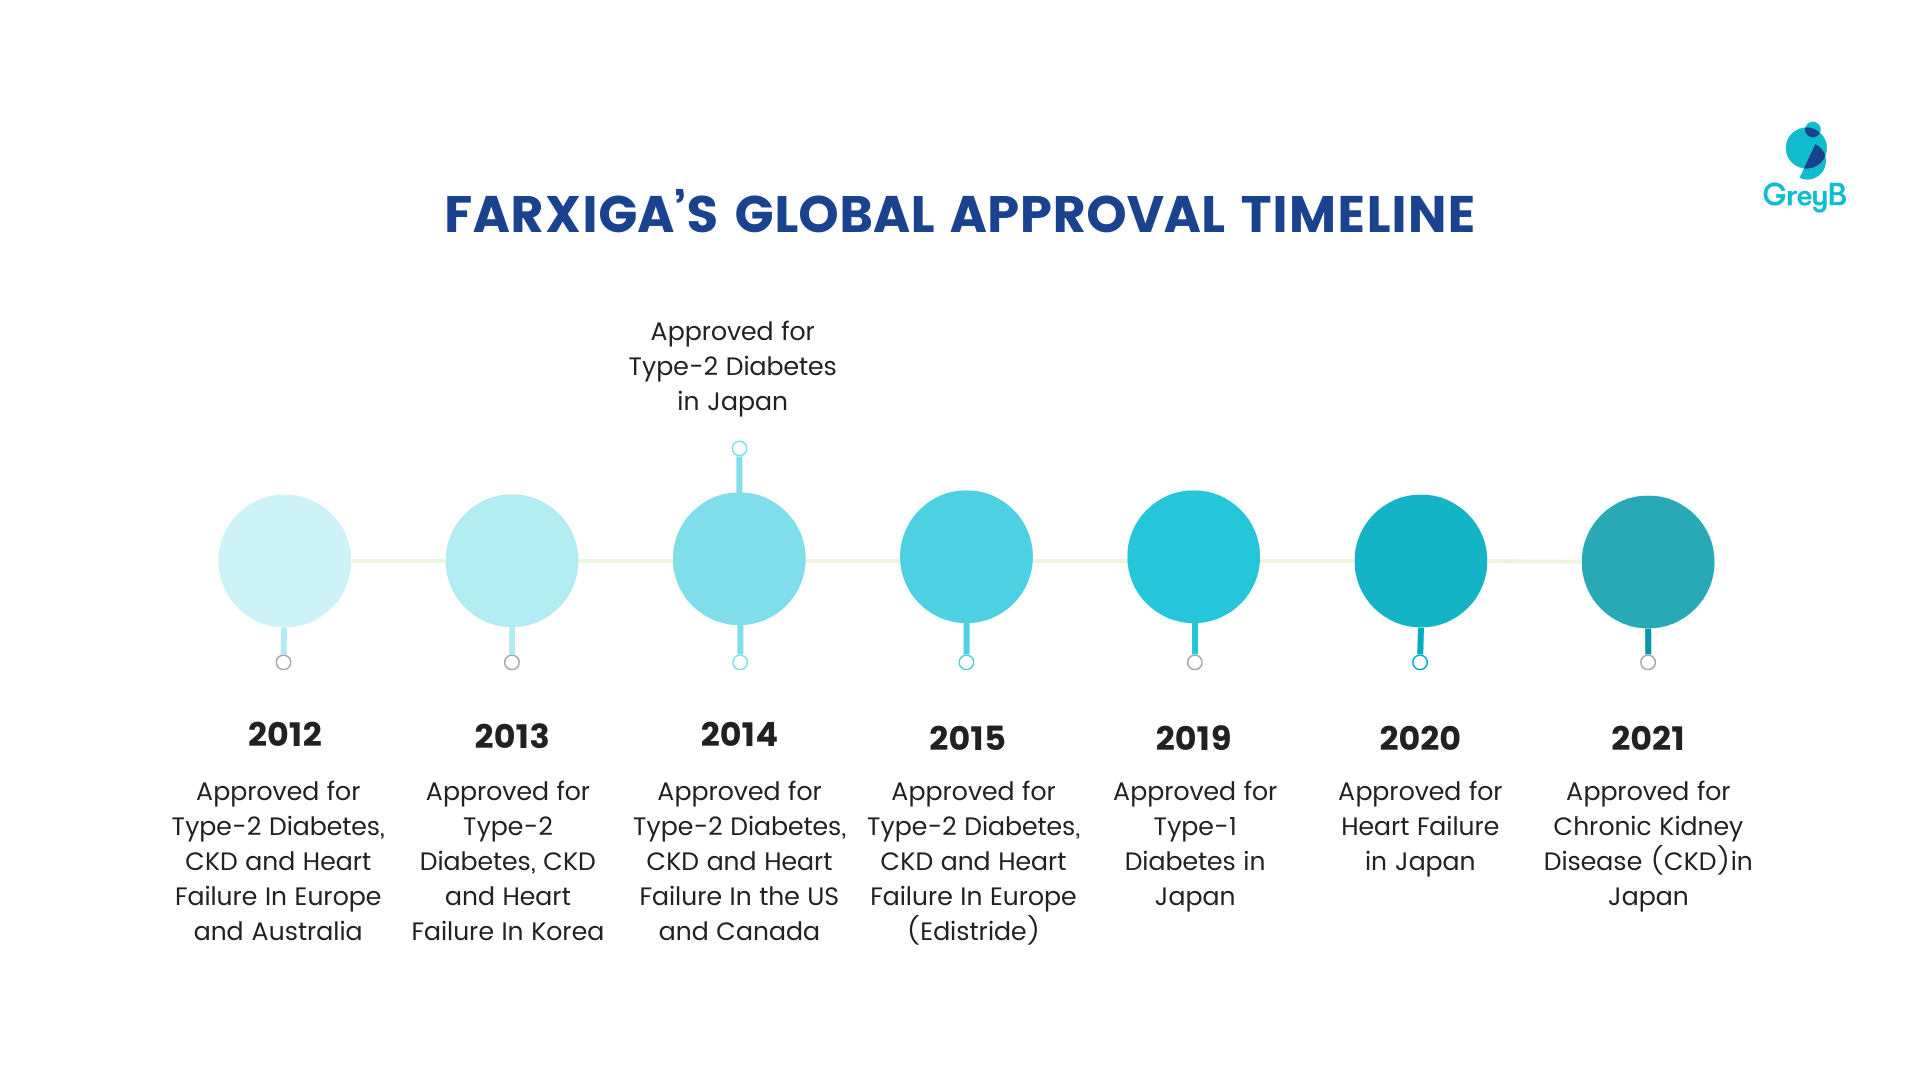 Farxiga's global approval timeline